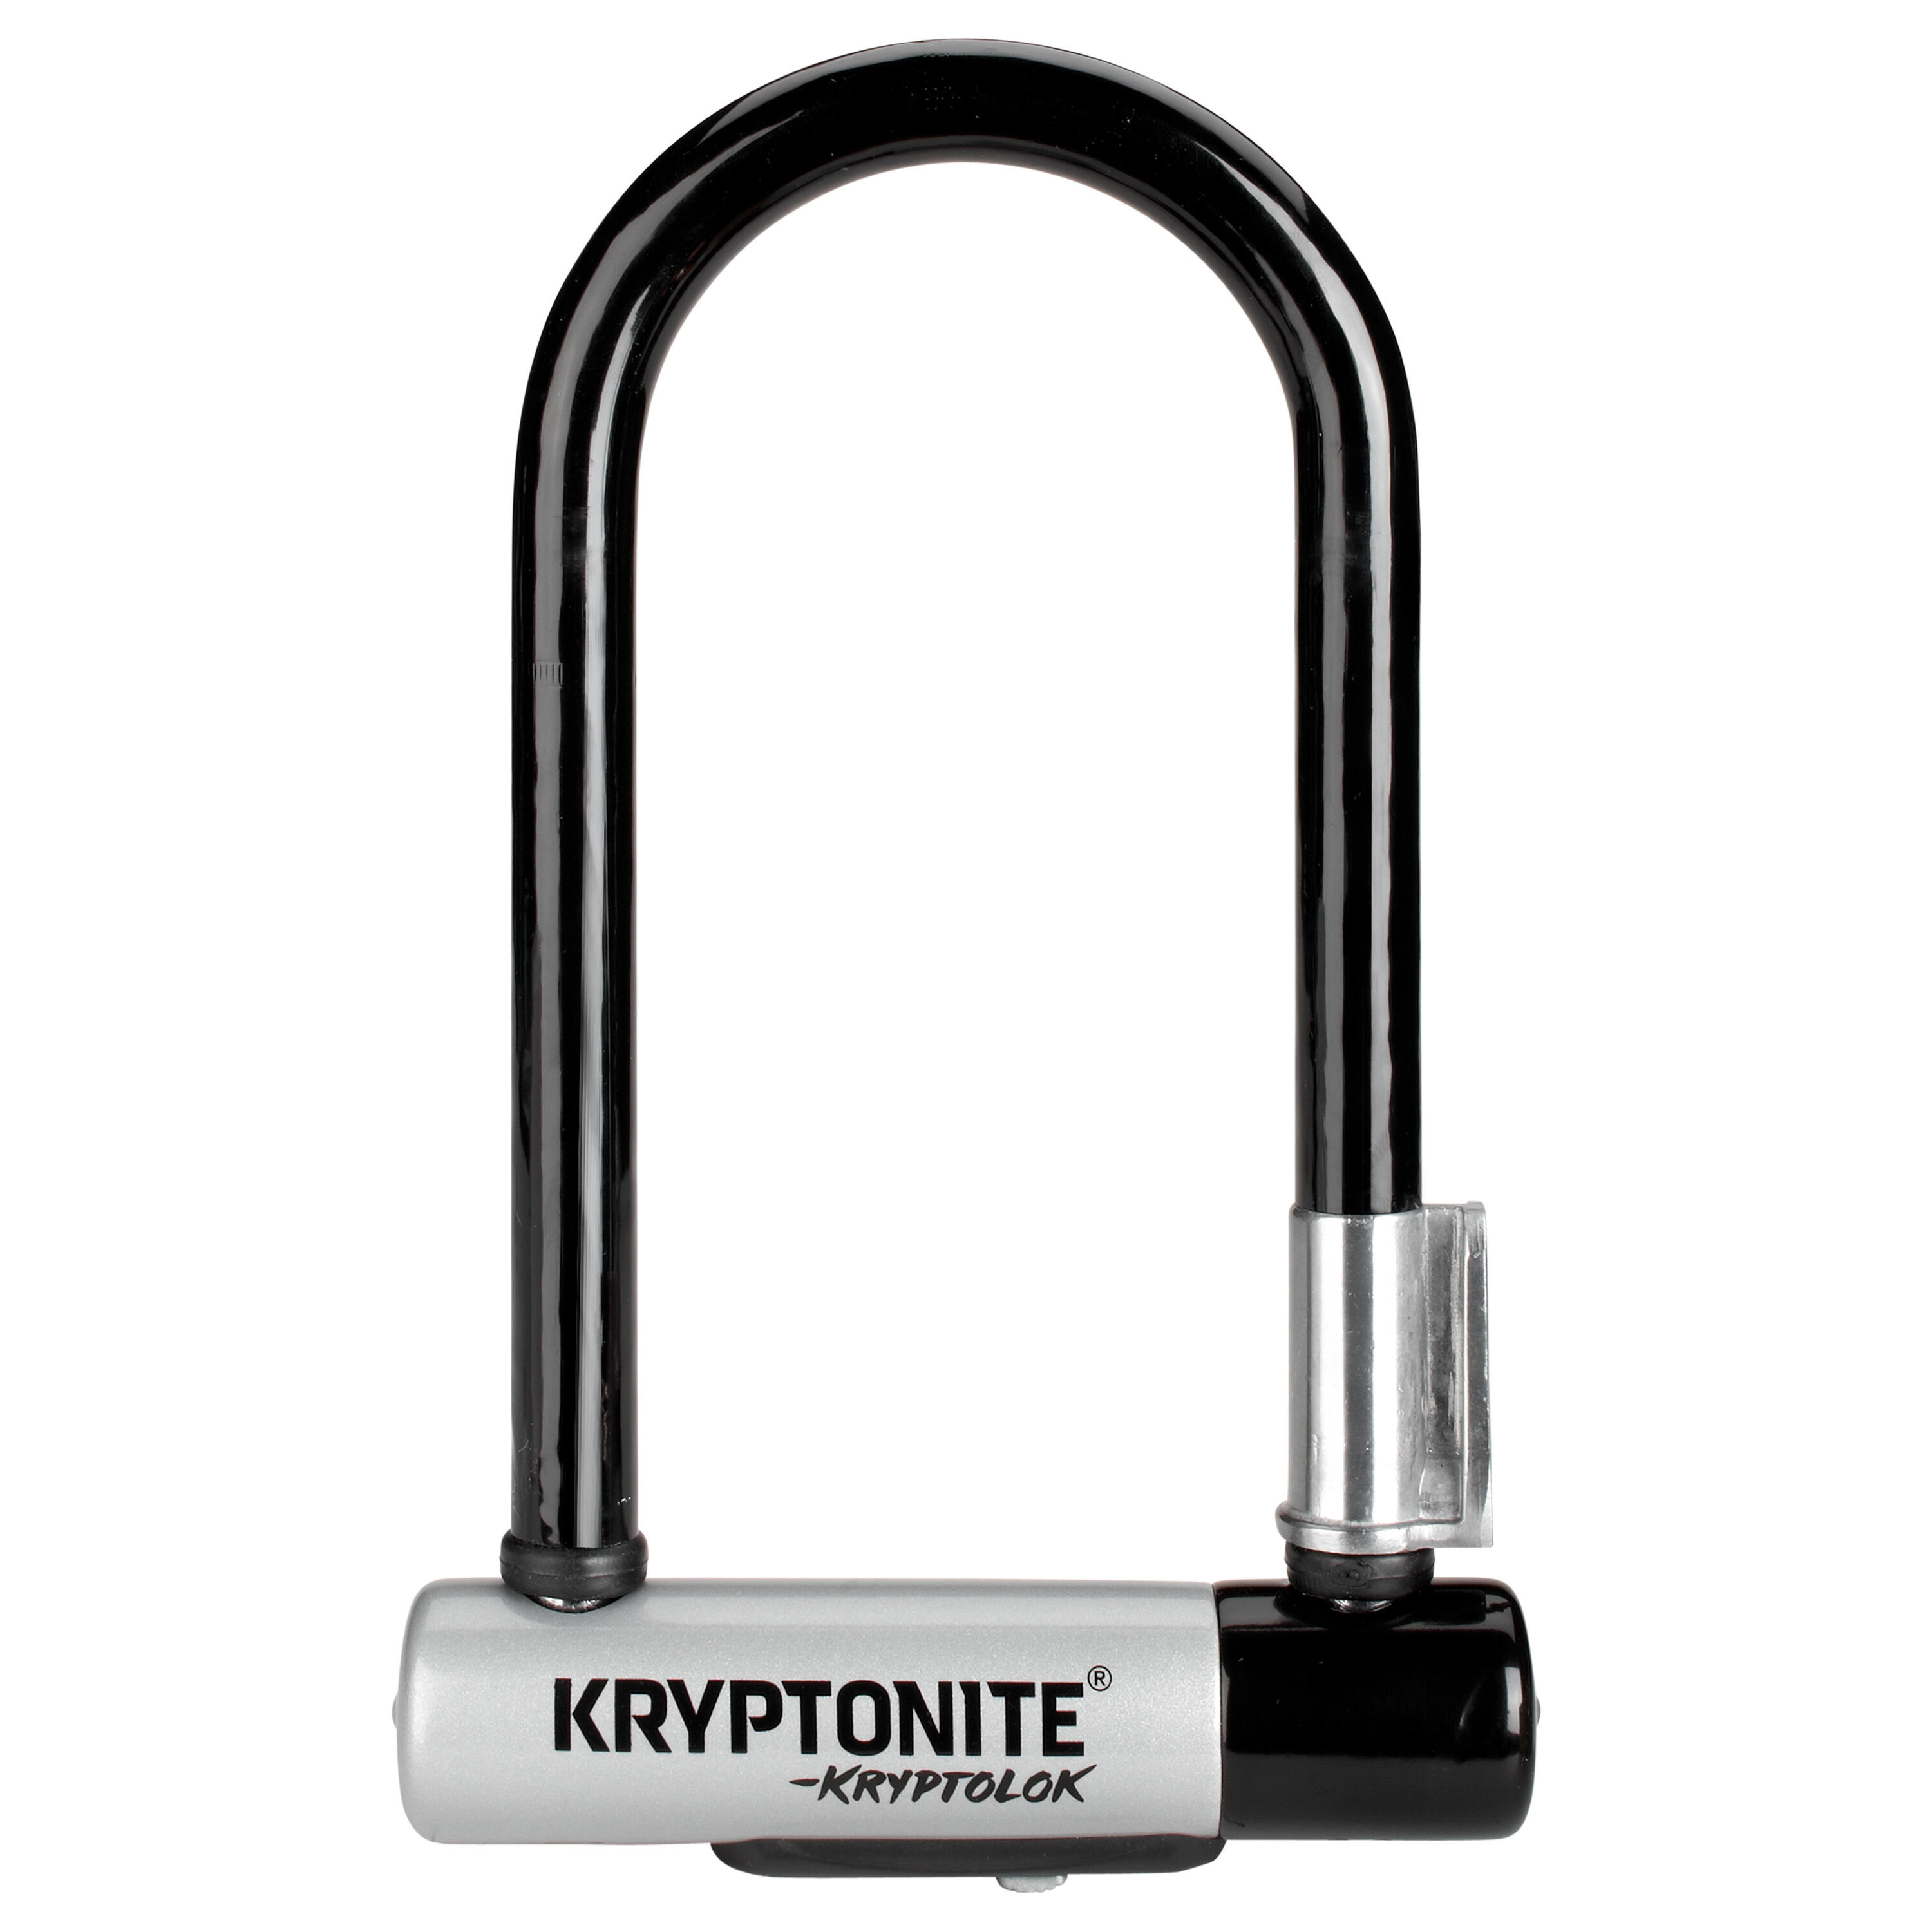 Kryptonite KryptoLok D Lock with 4 foot Krytoflex cable - Sold Secure Gold 2/5